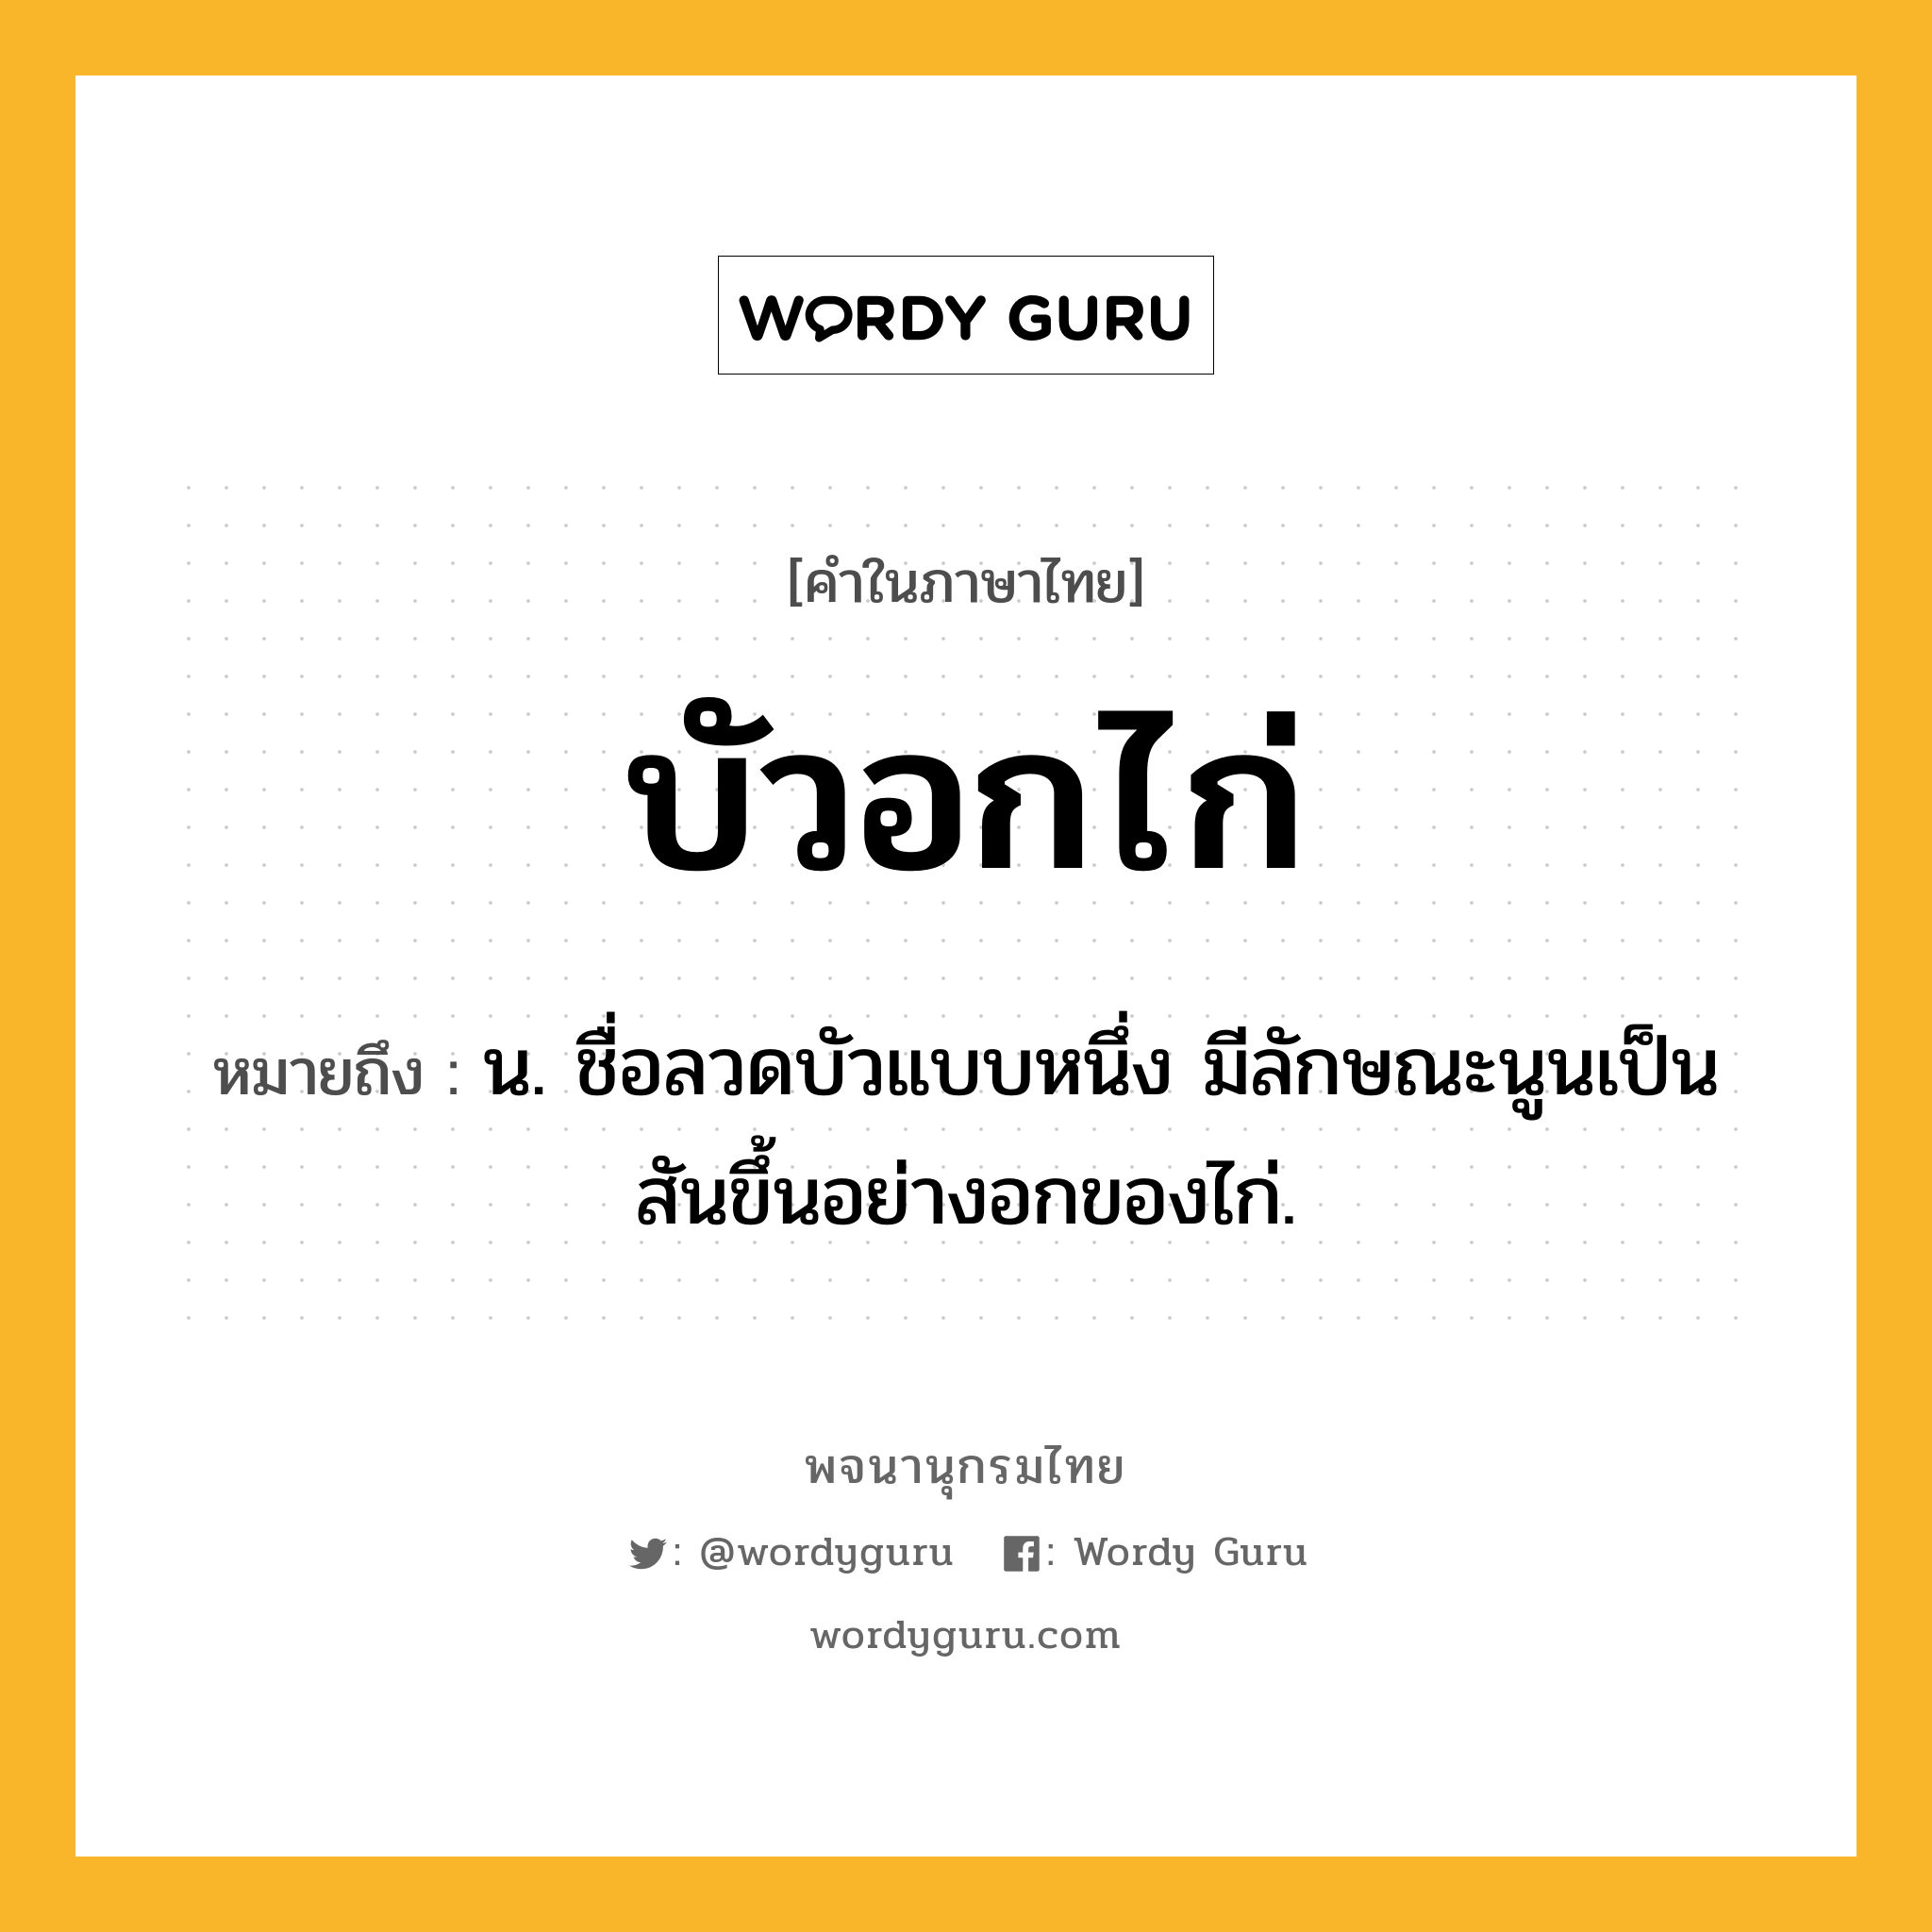 บัวอกไก่ หมายถึงอะไร?, คำในภาษาไทย บัวอกไก่ หมายถึง น. ชื่อลวดบัวแบบหนึ่ง มีลักษณะนูนเป็นสันขึ้นอย่างอกของไก่.